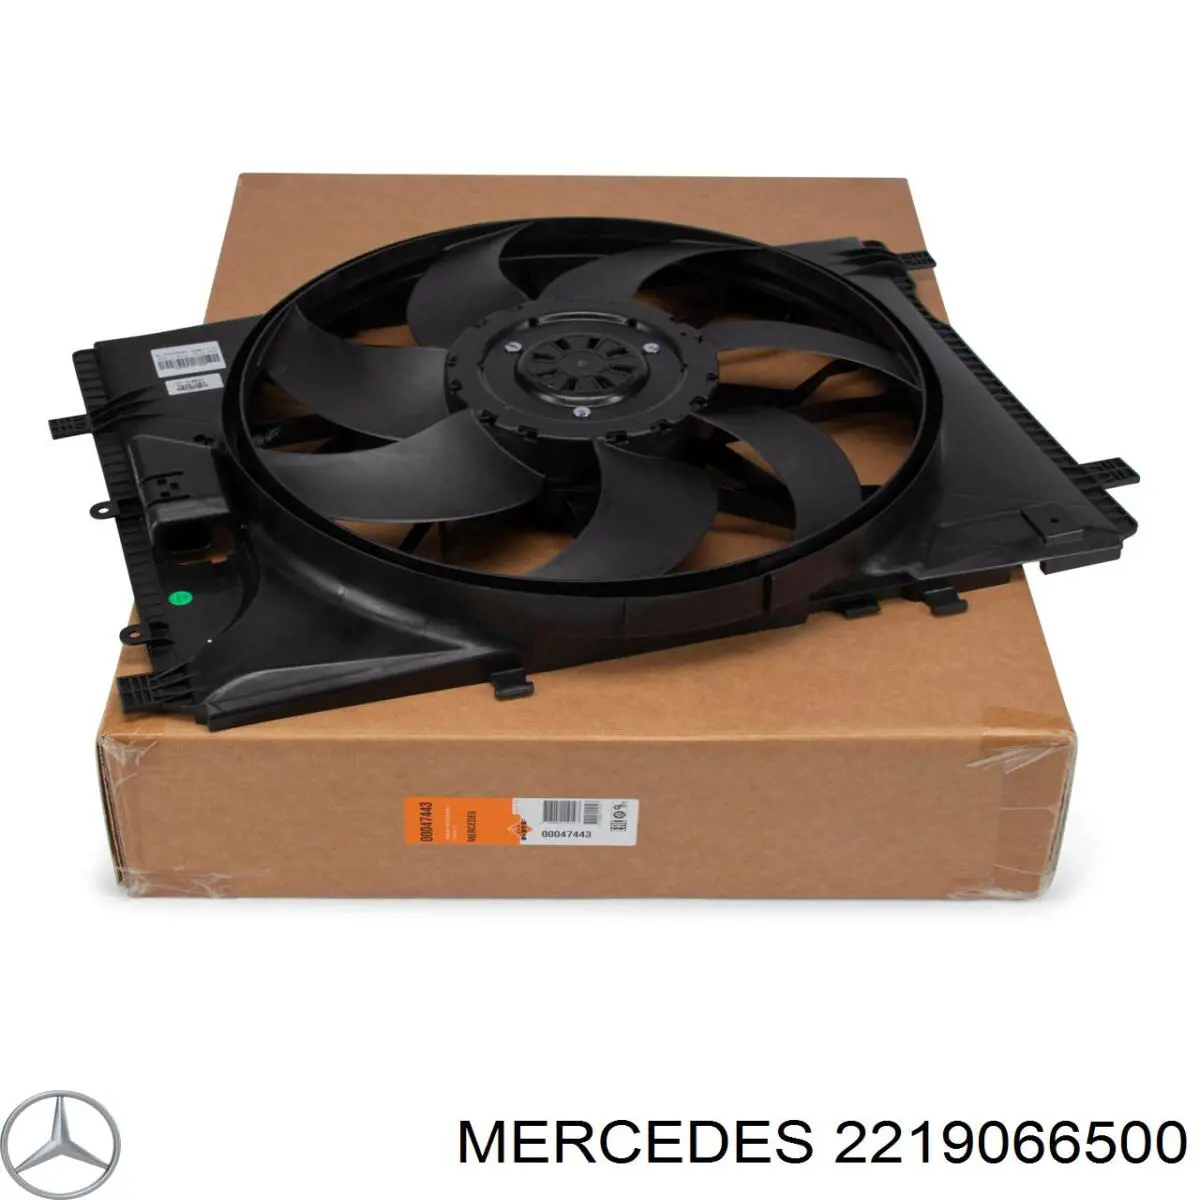 2219066500 Mercedes difusor de radiador, ventilador de refrigeración, condensador del aire acondicionado, completo con motor y rodete